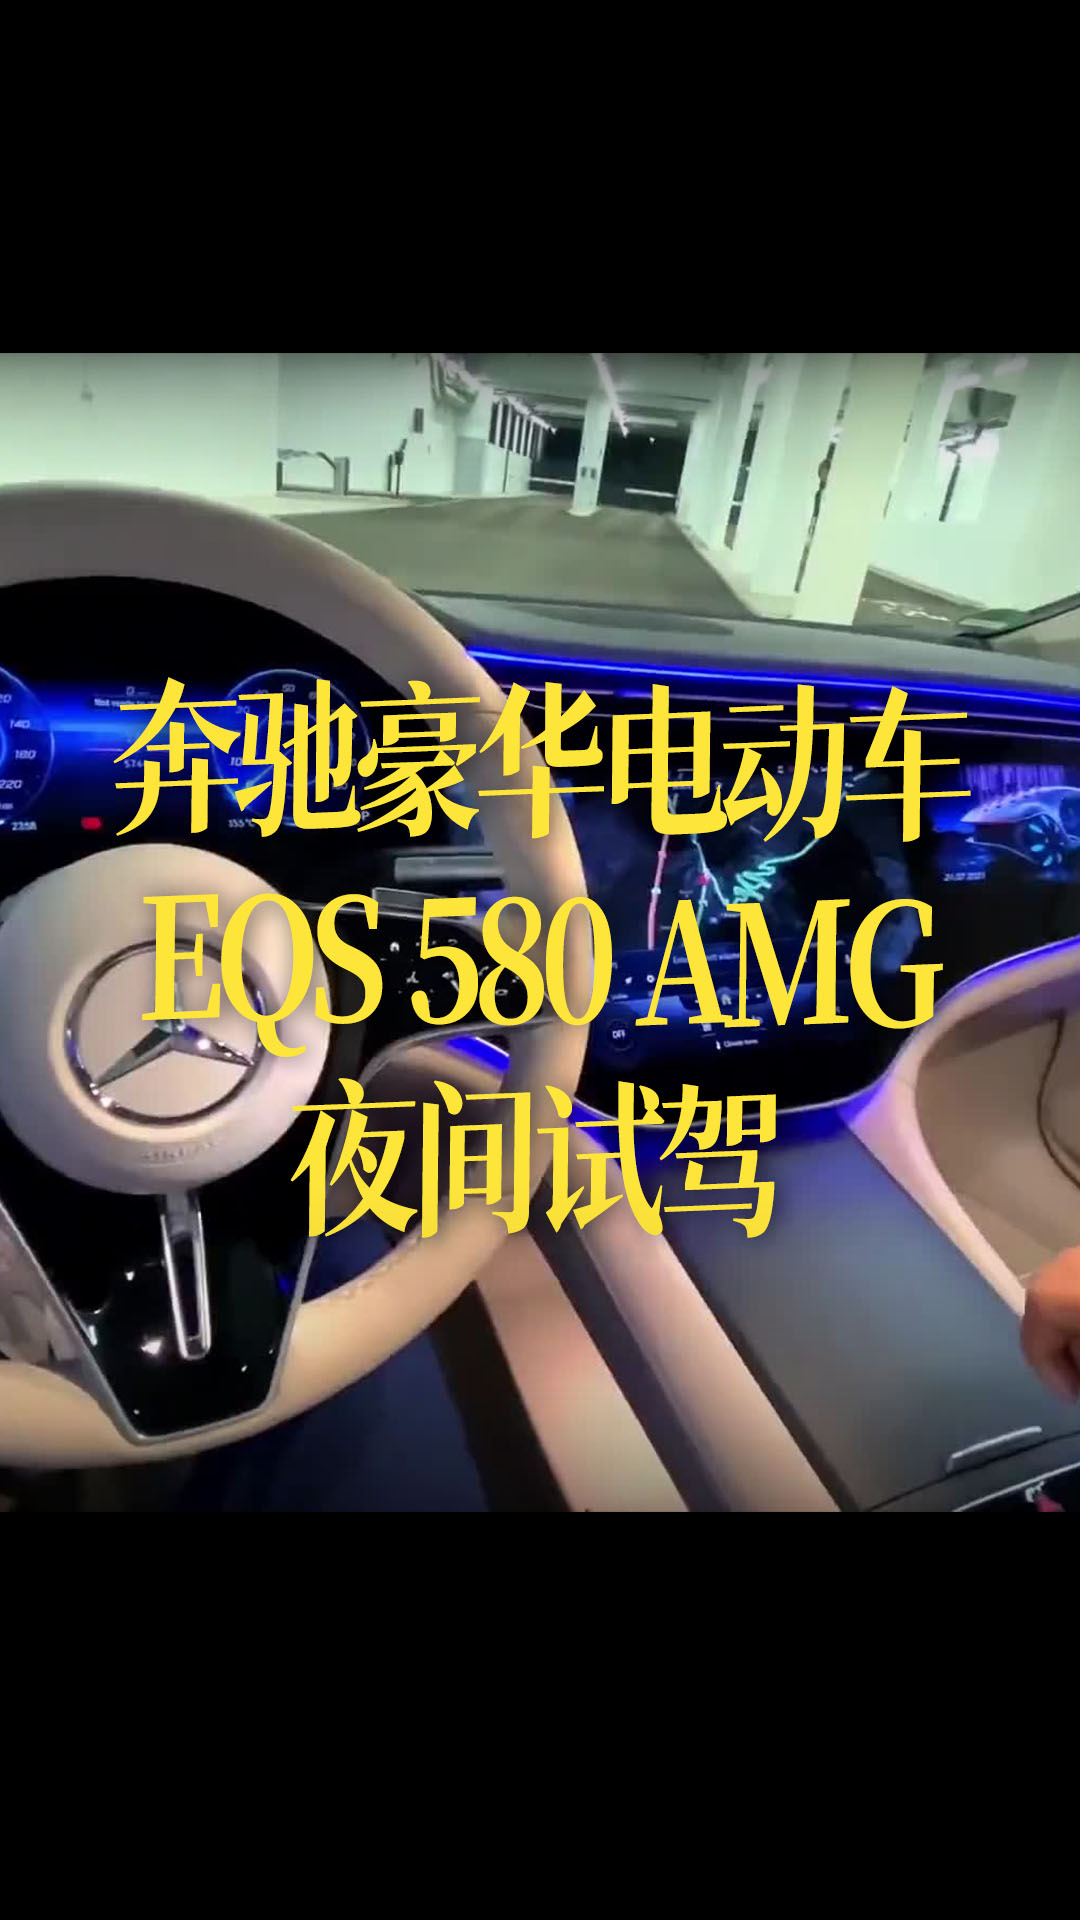 【中文字幕】奔驰豪华电动车EQS 580 AMG夜间试驾